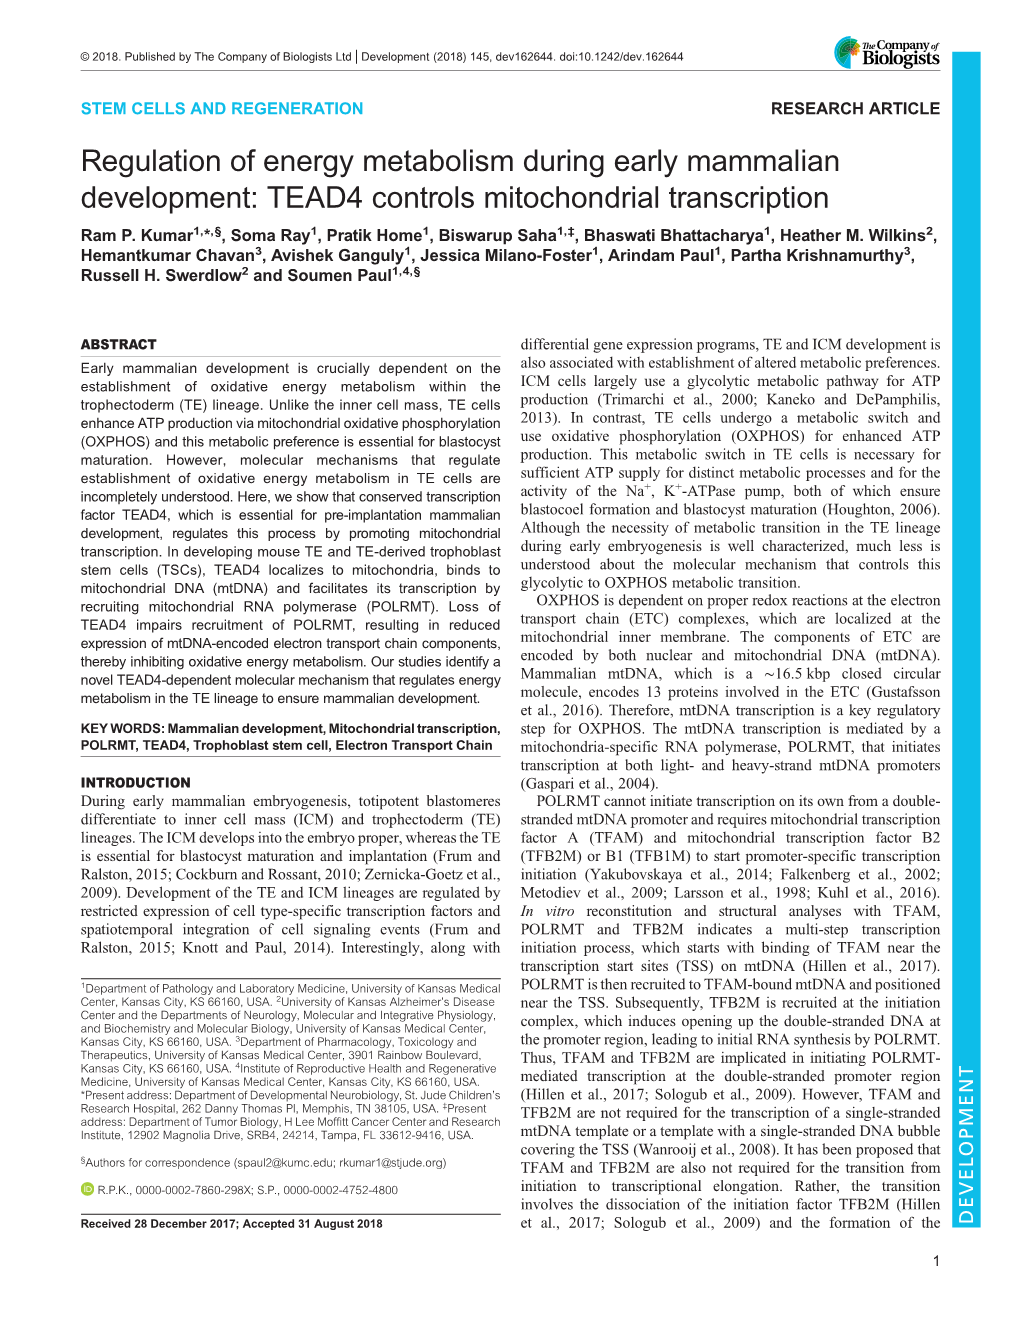 TEAD4 Controls Mitochondrial Transcription Ram P